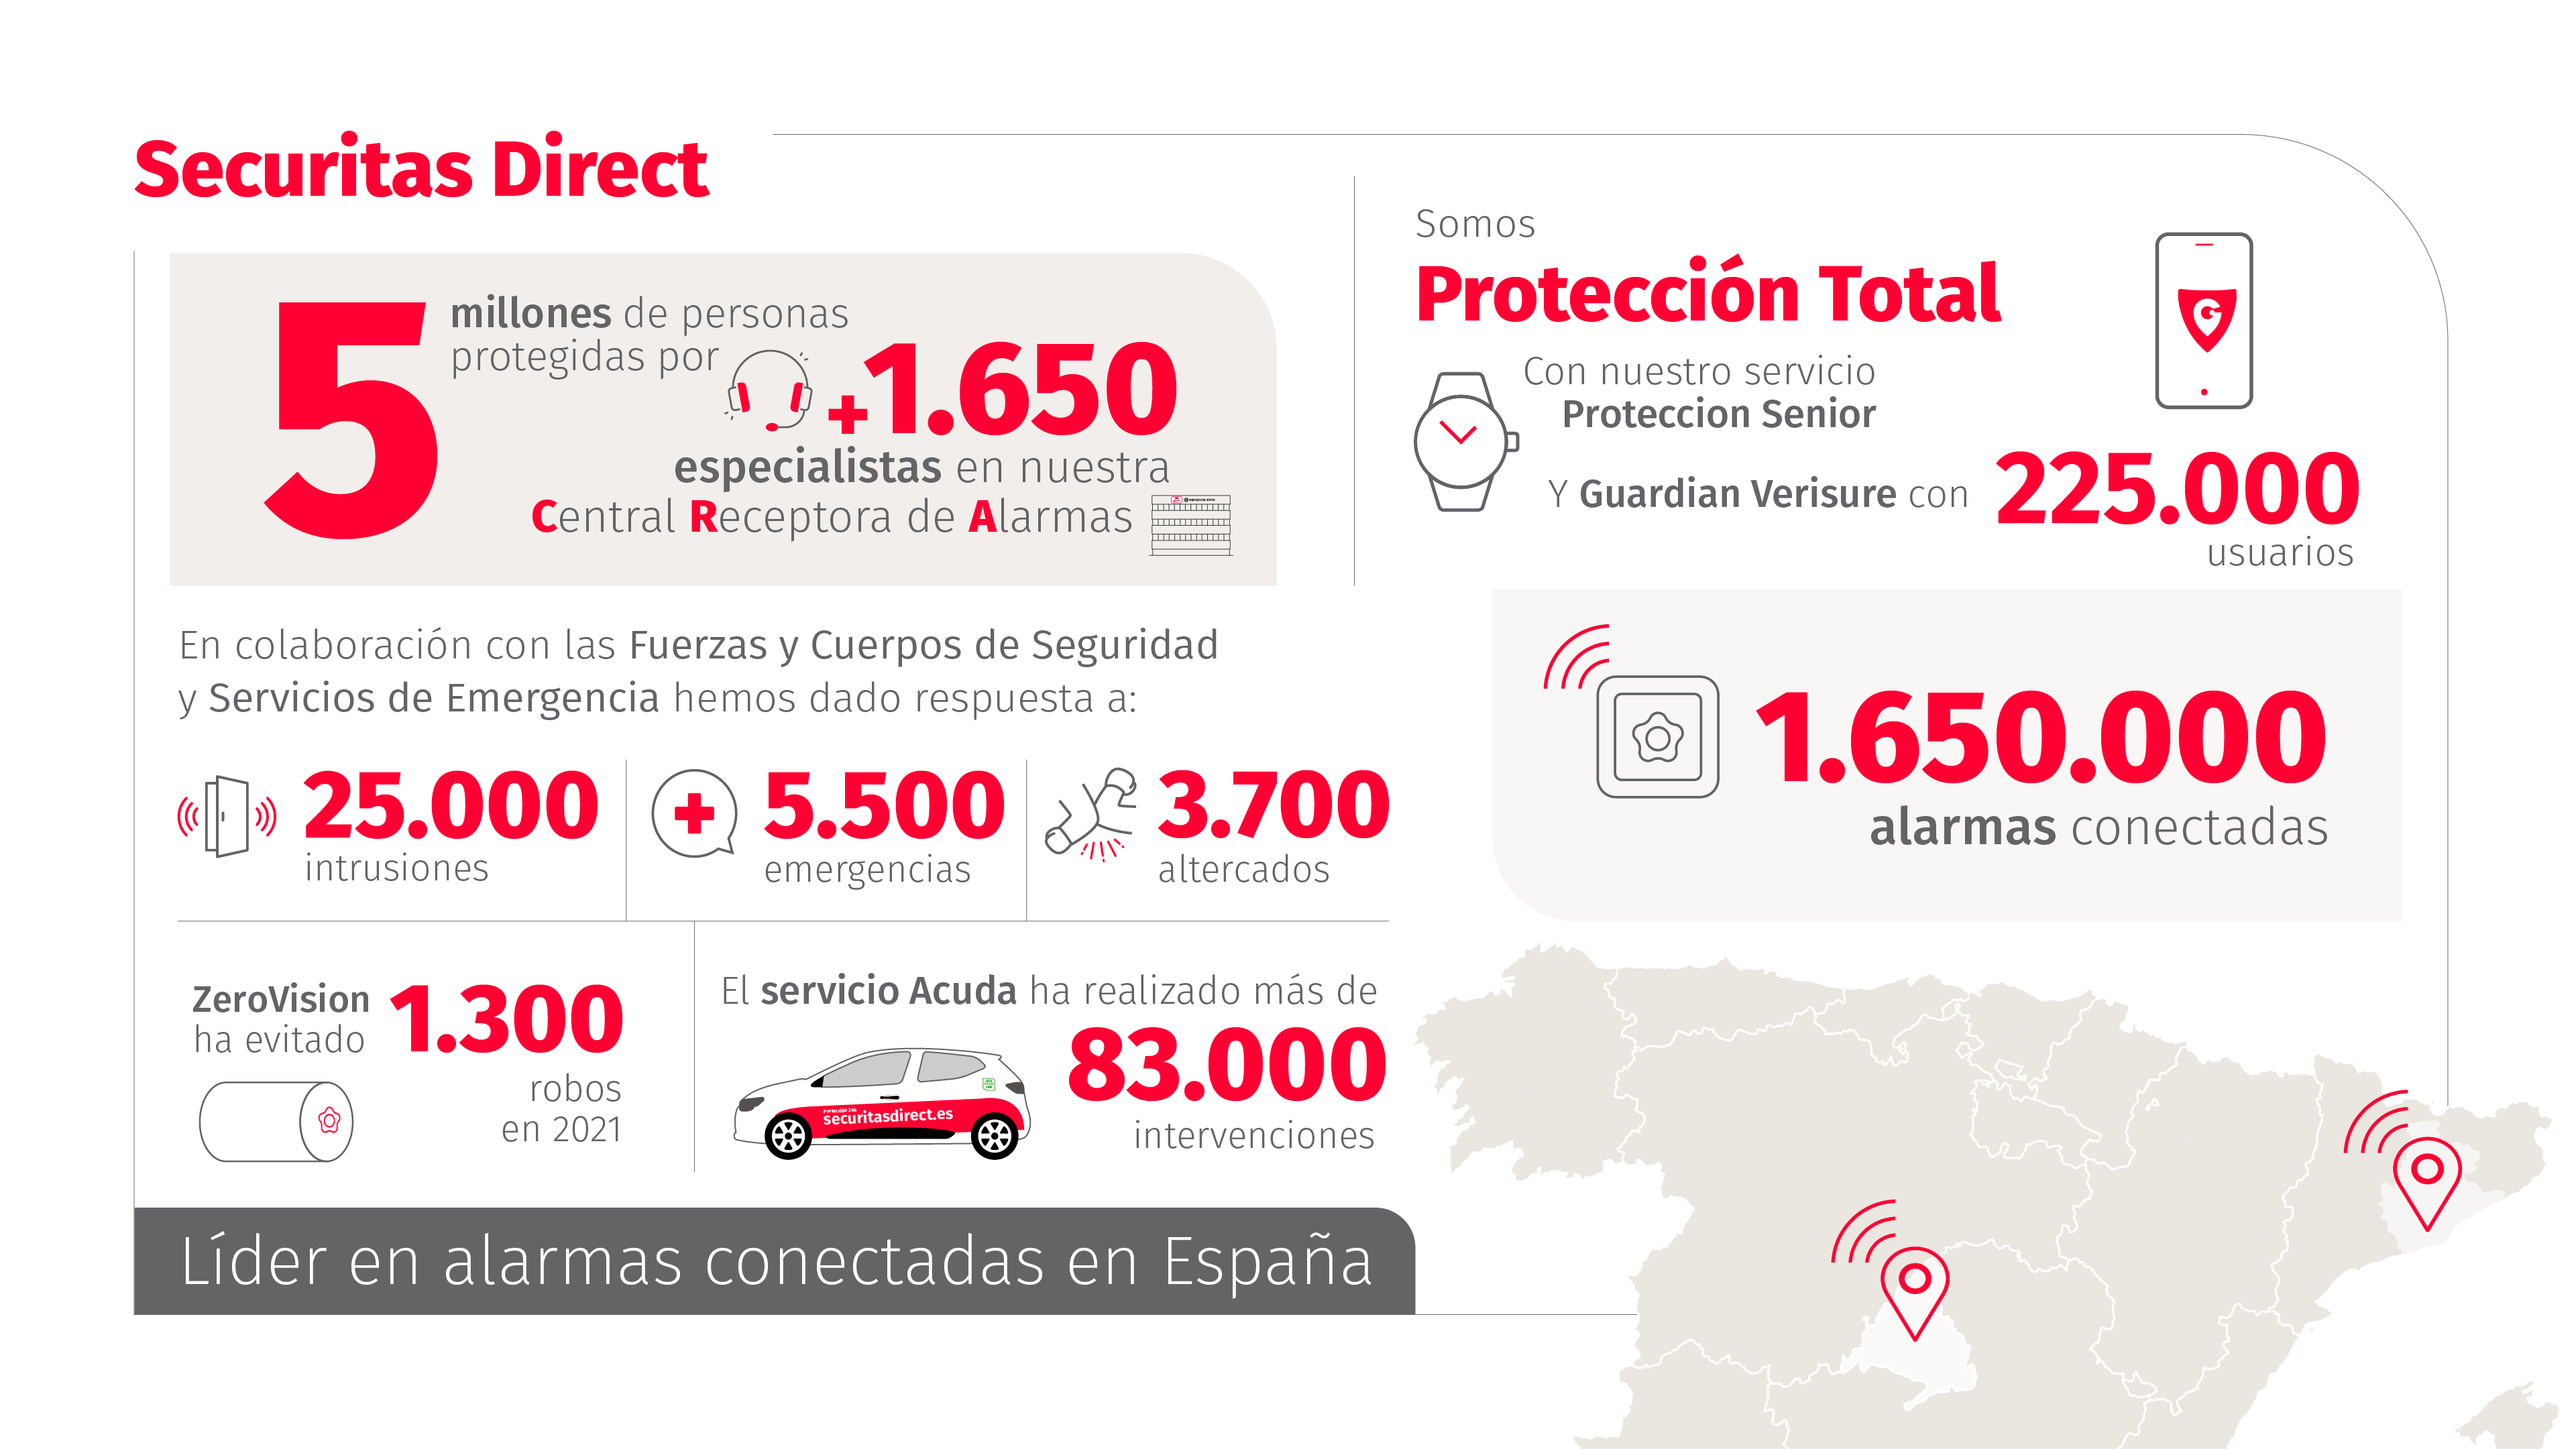 Securitas Direct lidera el sector de alarmas conectadas en España con cinco millones de personas protegidas